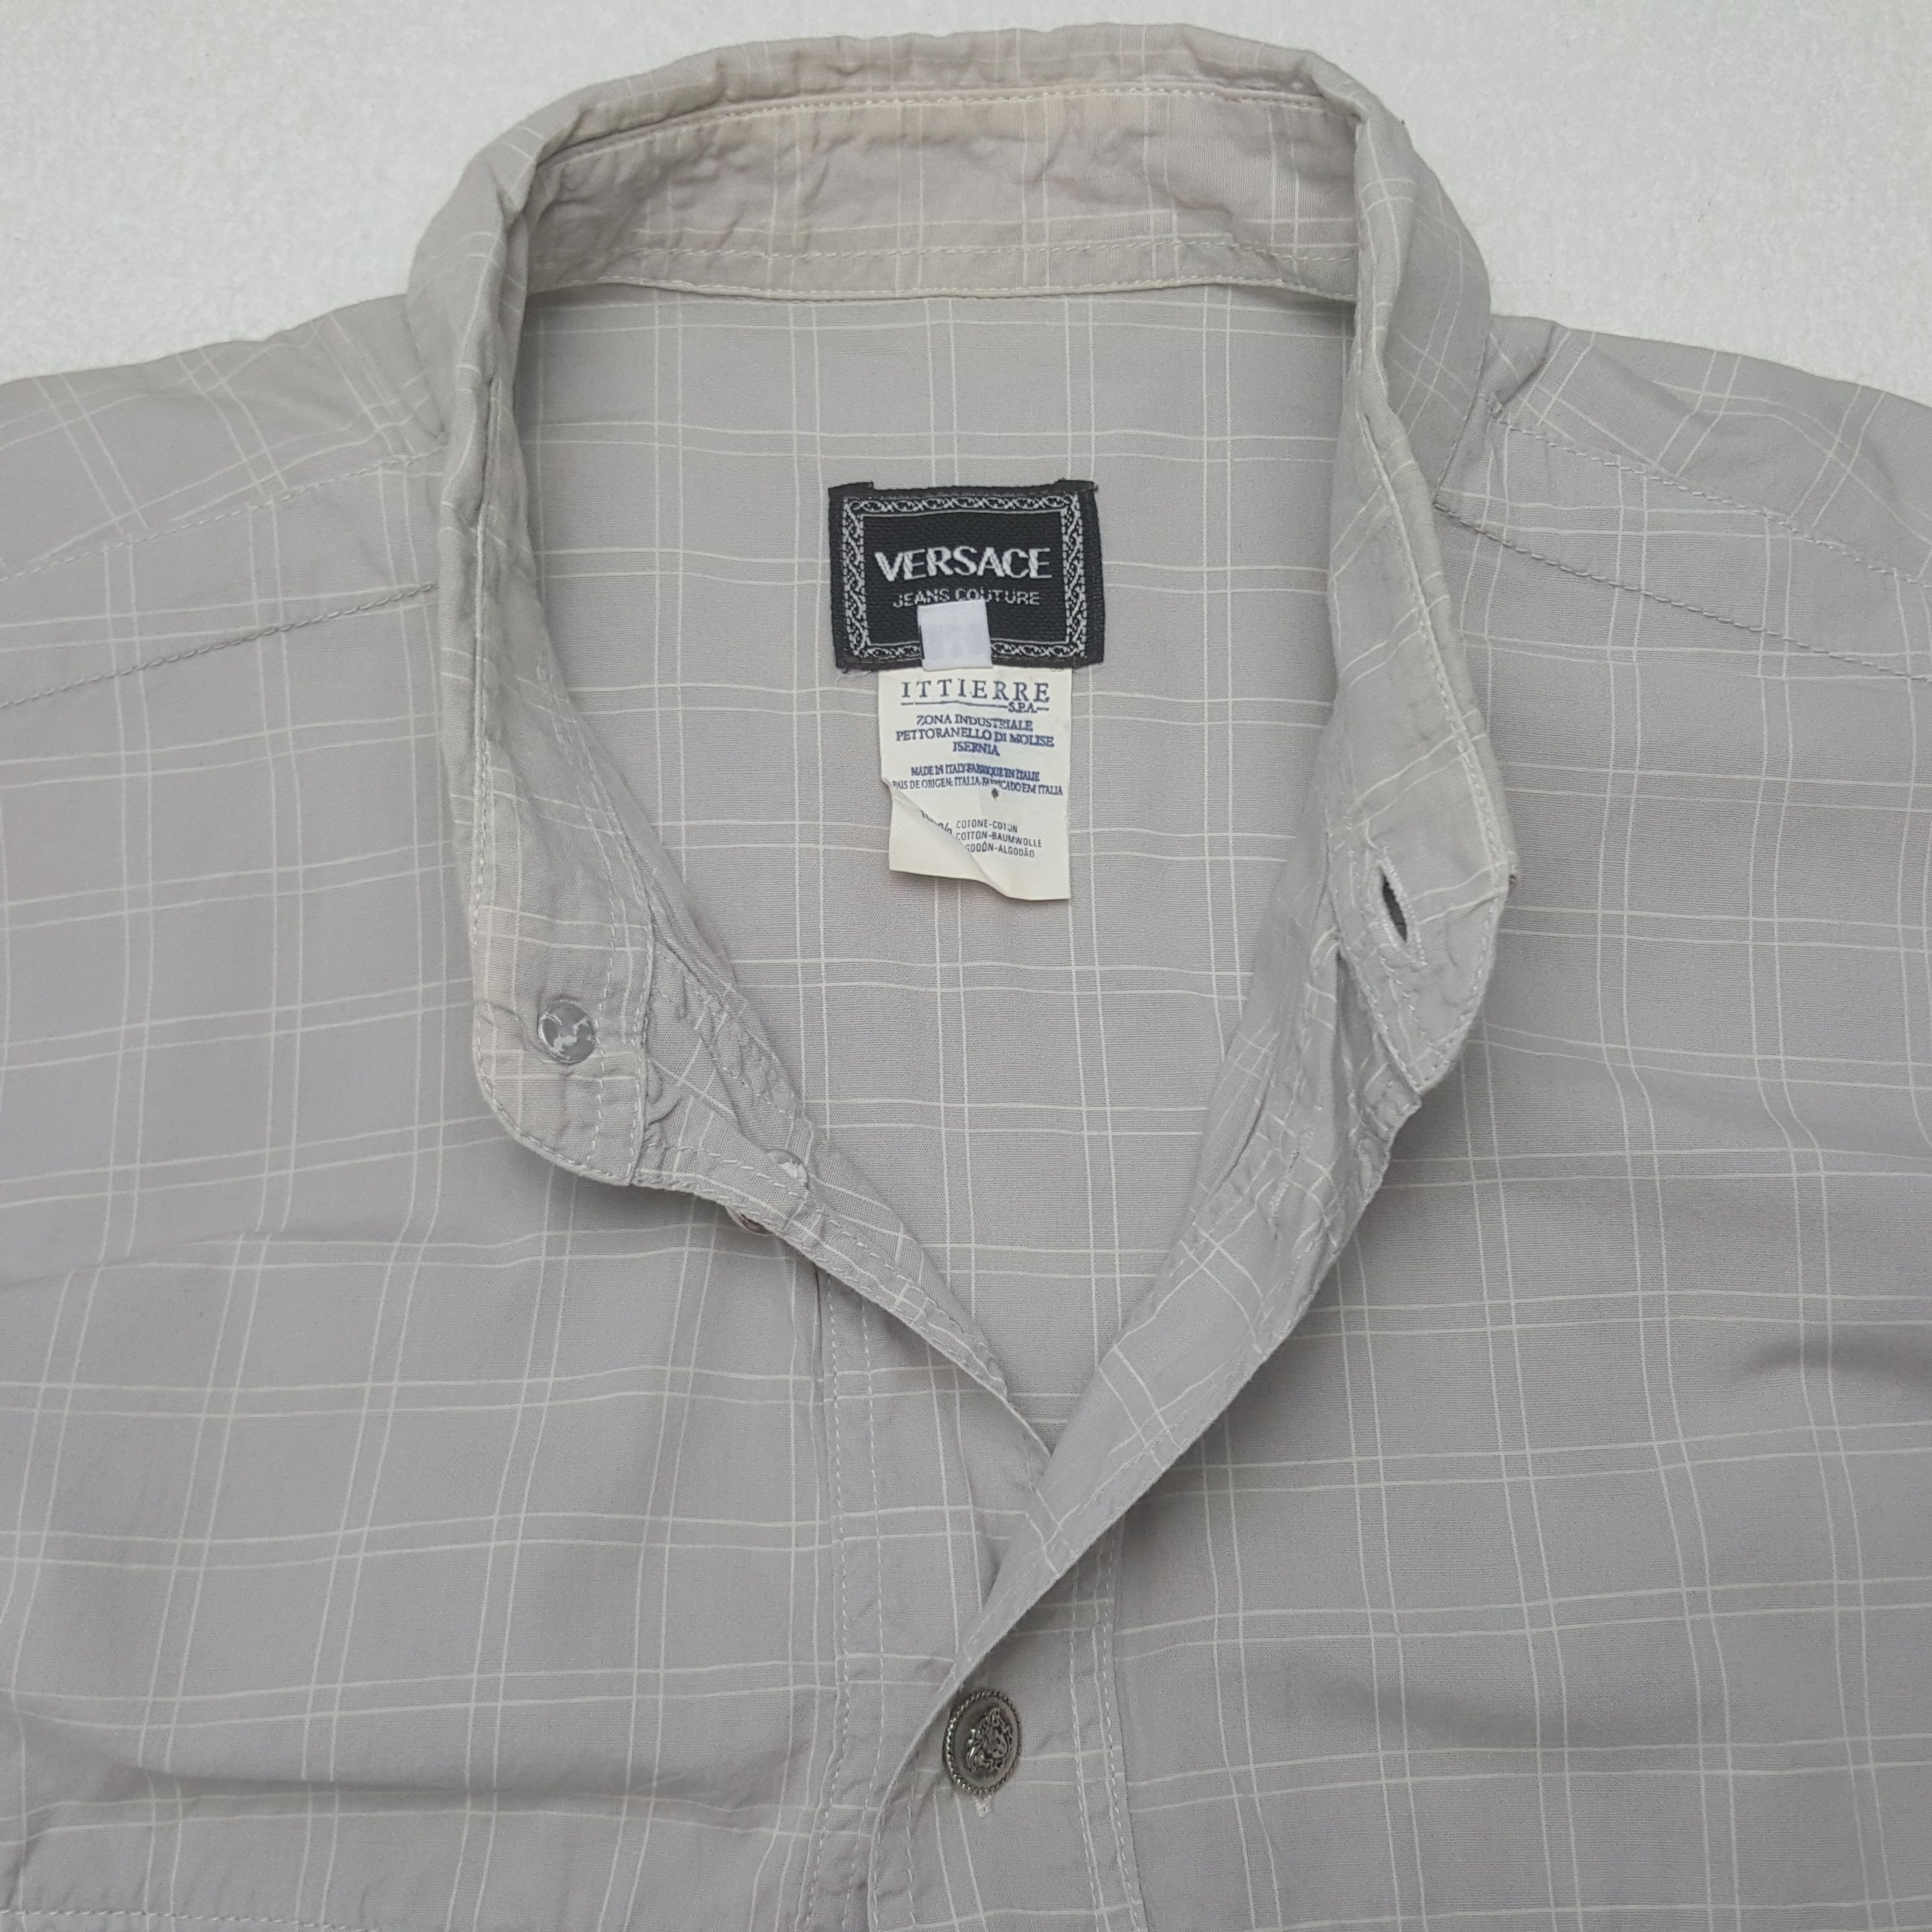 Vintage Vintage Versace Worker Button Up Shirt Size US L / EU 52-54 / 3 - 4 Thumbnail